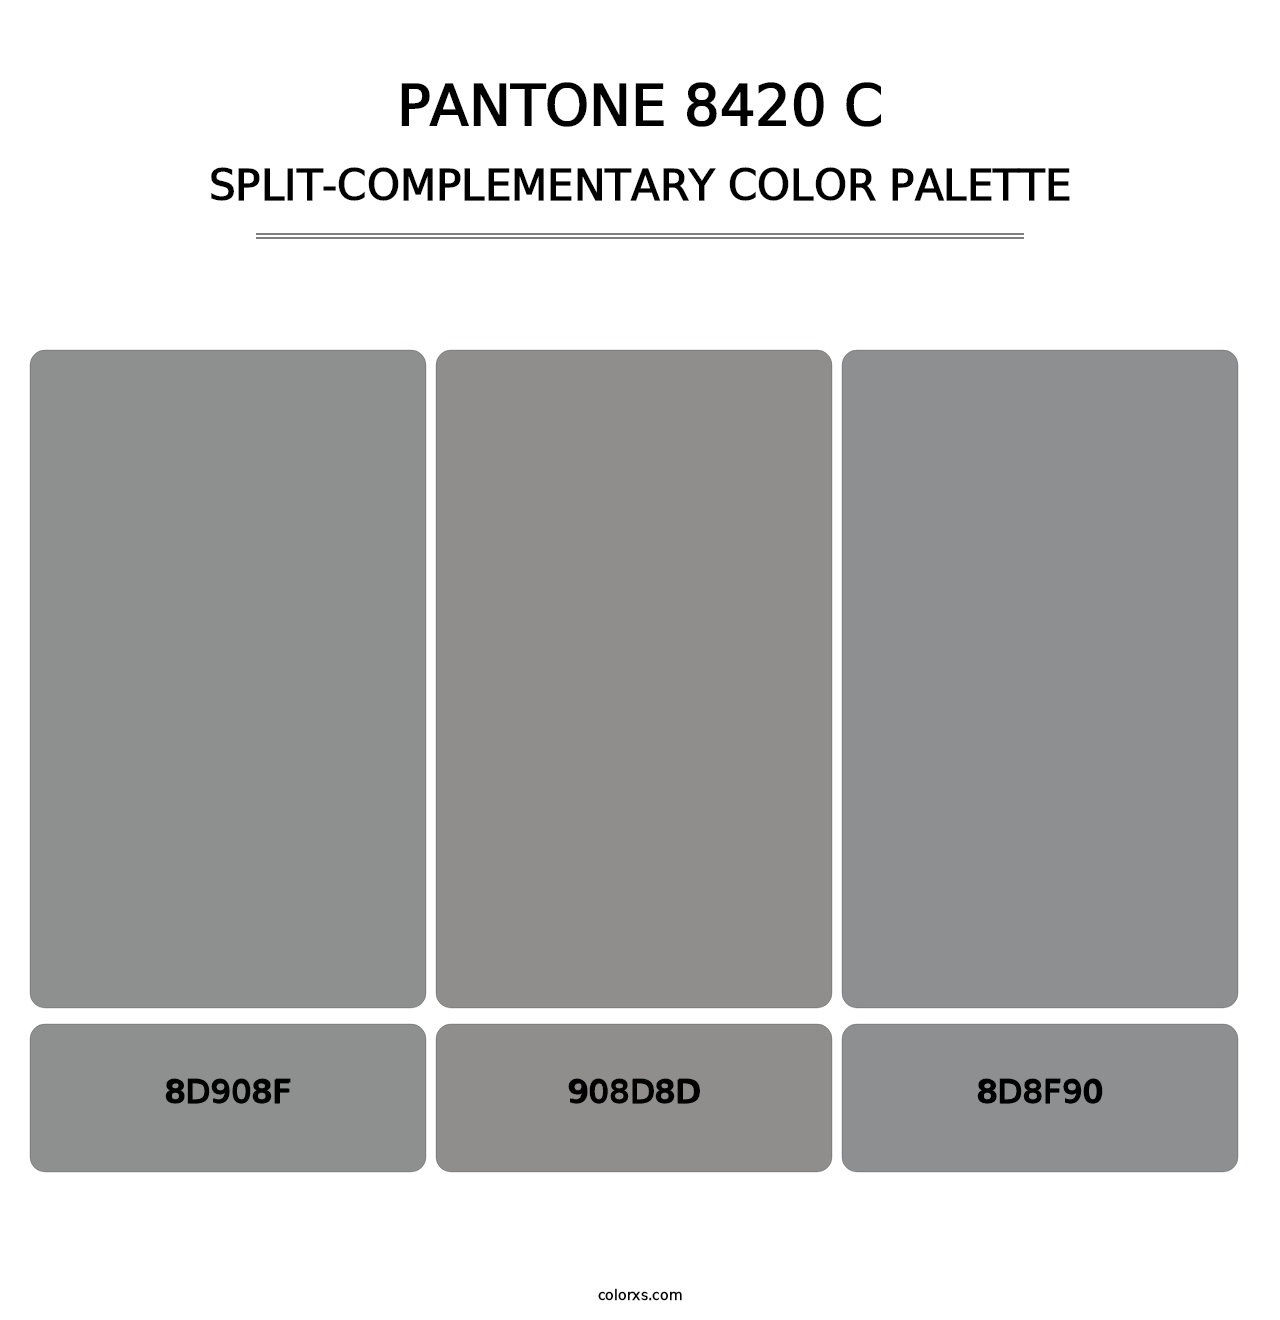 PANTONE 8420 C - Split-Complementary Color Palette